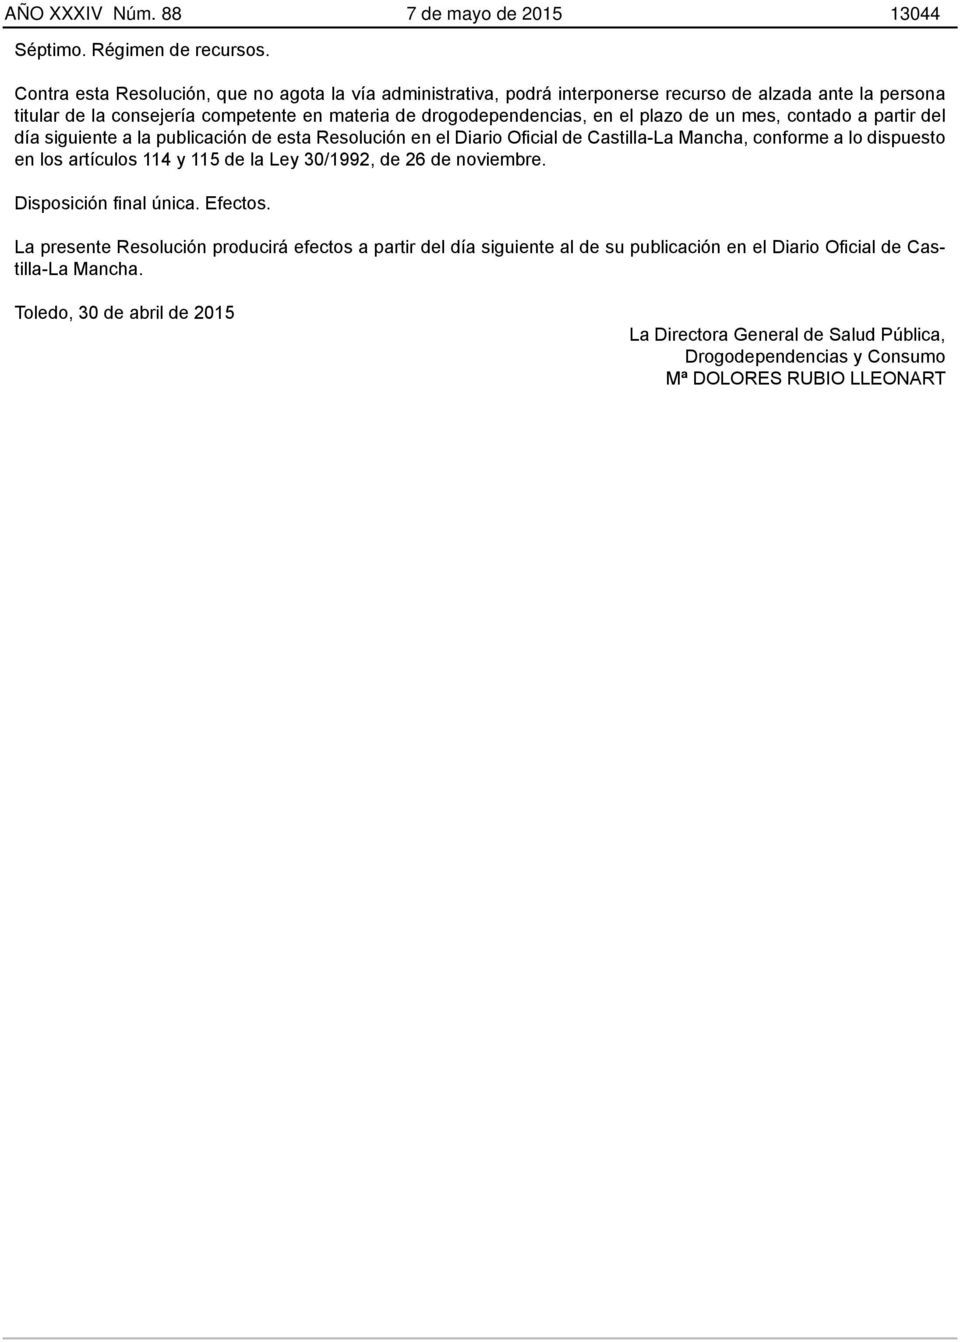 el plazo de un mes, contado a partir del día siguiente a la publicación de esta Resolución en el Diario Oficial de Castilla-La Mancha, conforme a lo dispuesto en los artículos 114 y 115